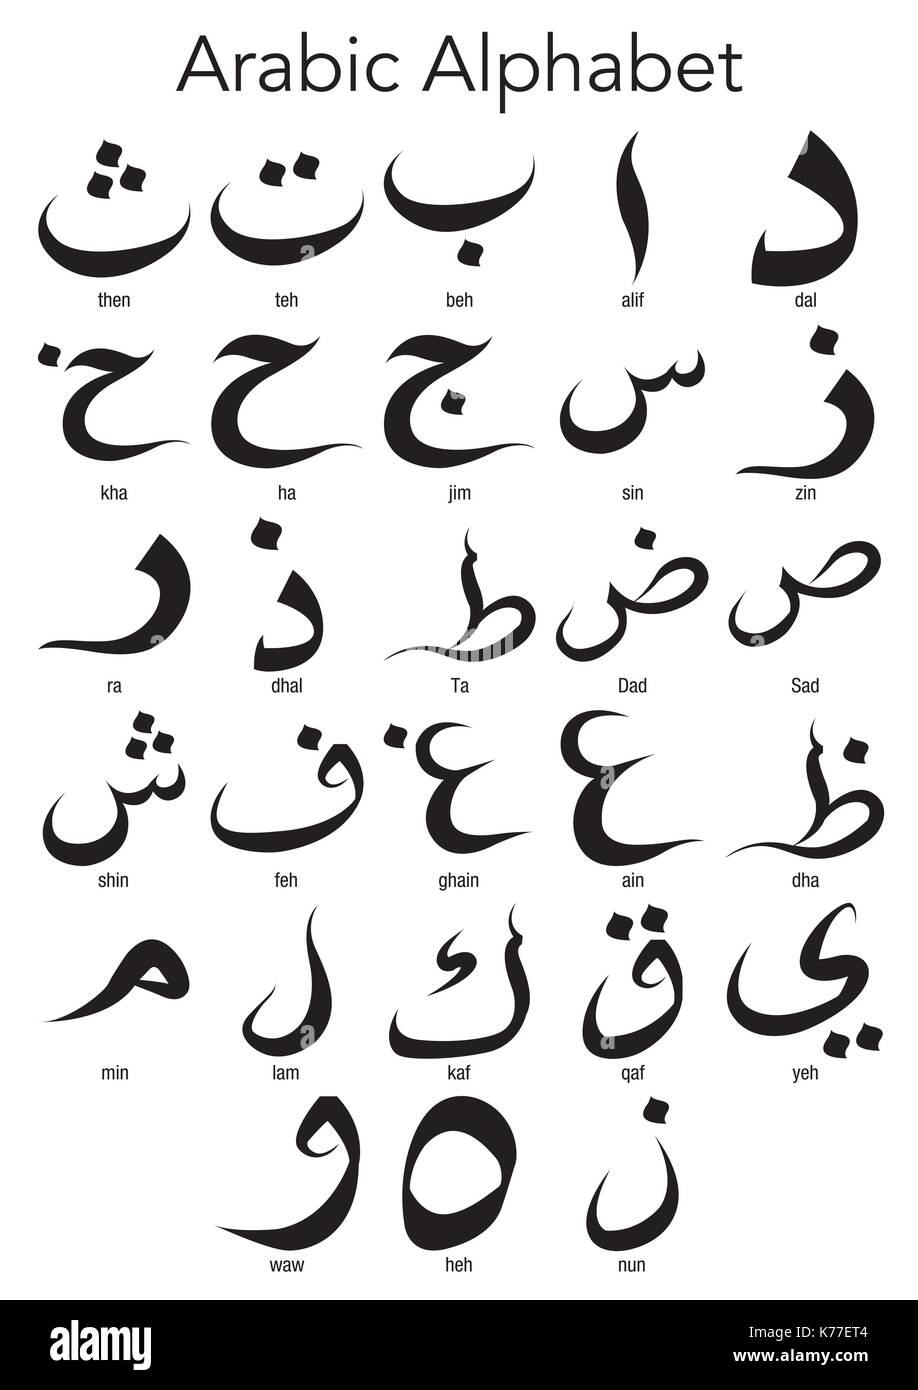 Einstellen des arabischen Alphabets auf weißem Hintergrund - Vektorbild Stock Vektor